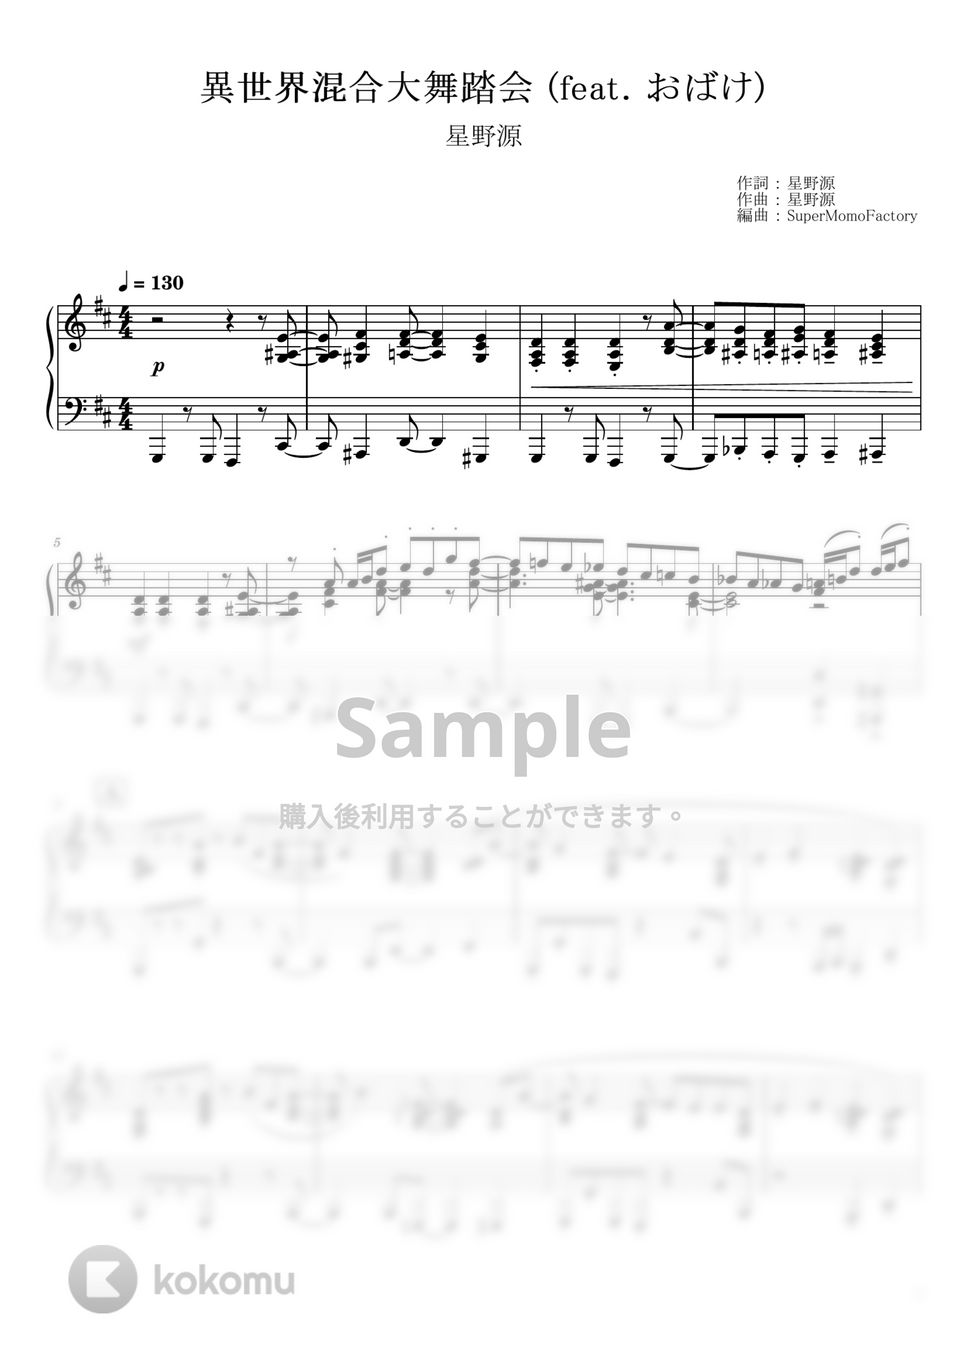 星野源 - 異世界混合大舞踏会 (feat. おばけ) (ピアノソロ / 上級) by SuperMomoFactory